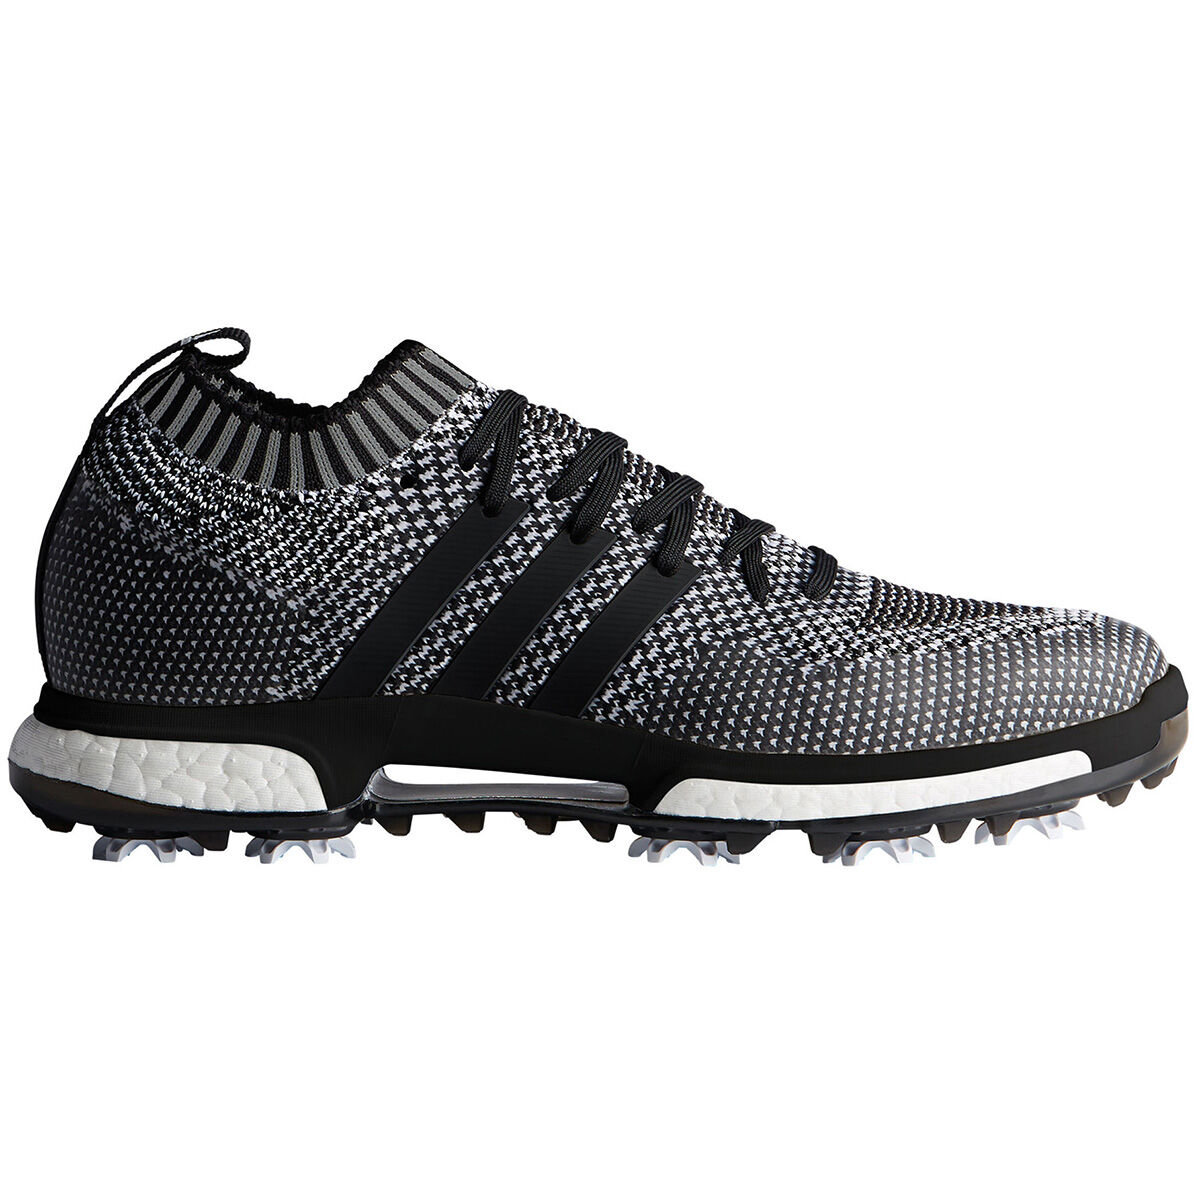 adidas tour 360 knit golf shoes black